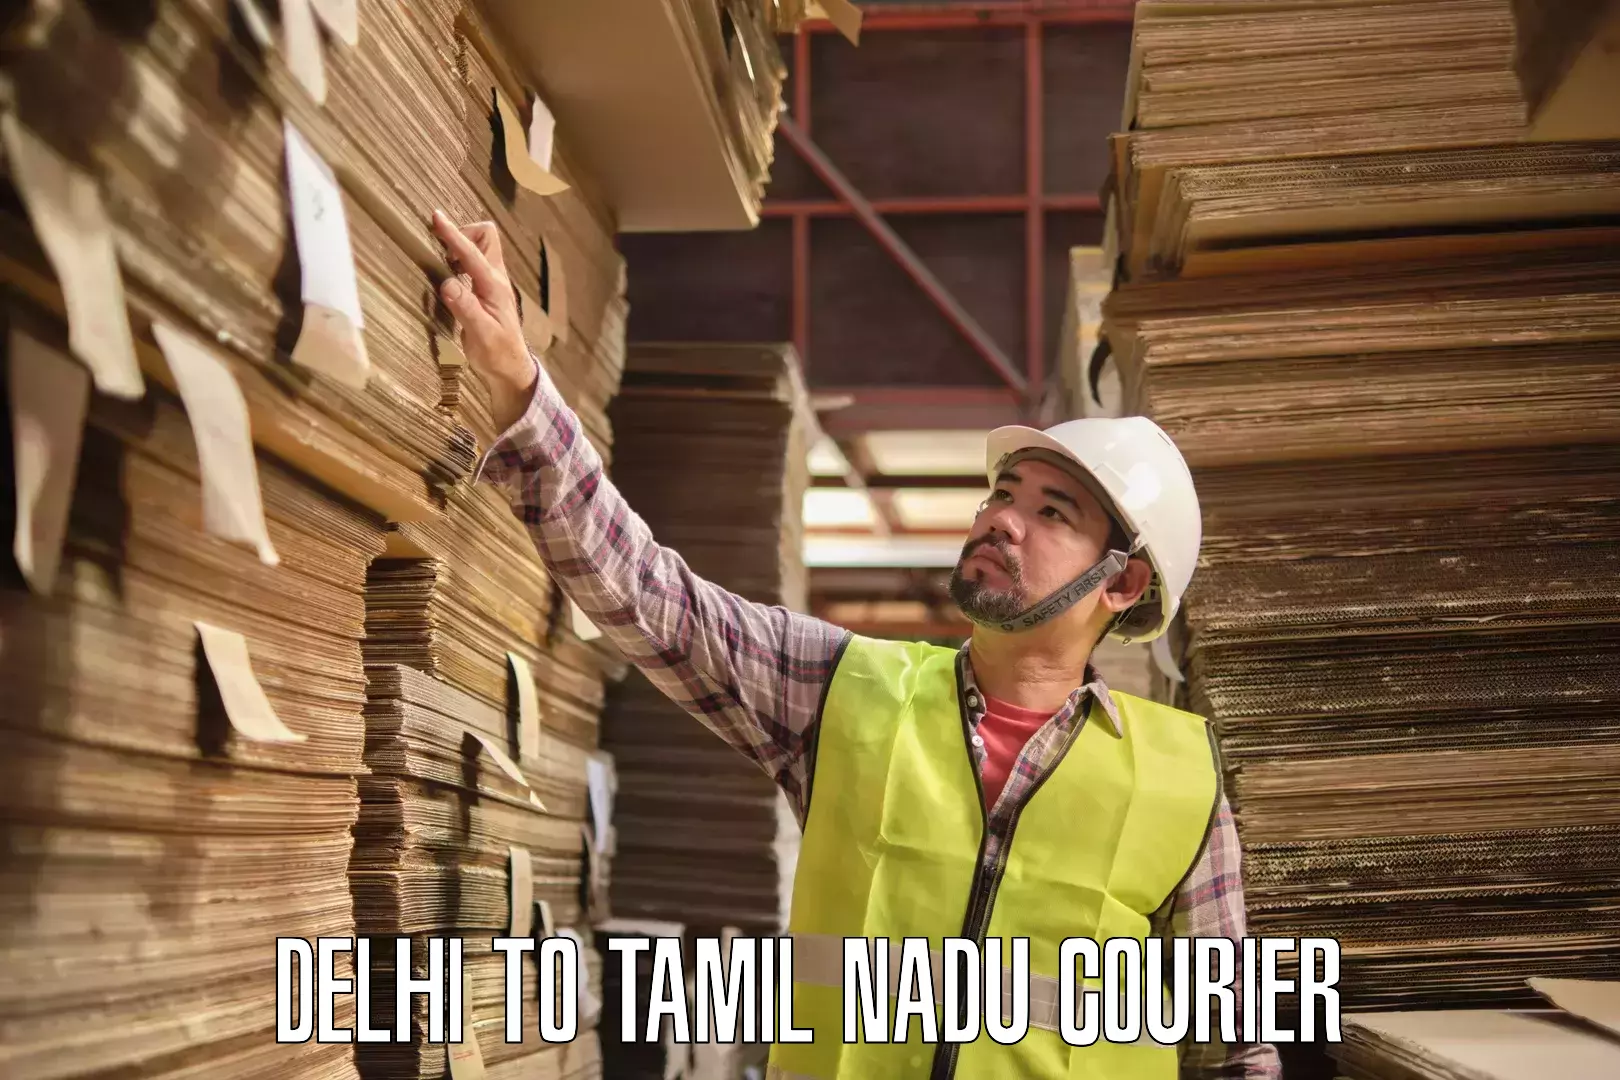 Next day courier Delhi to Tamil Nadu